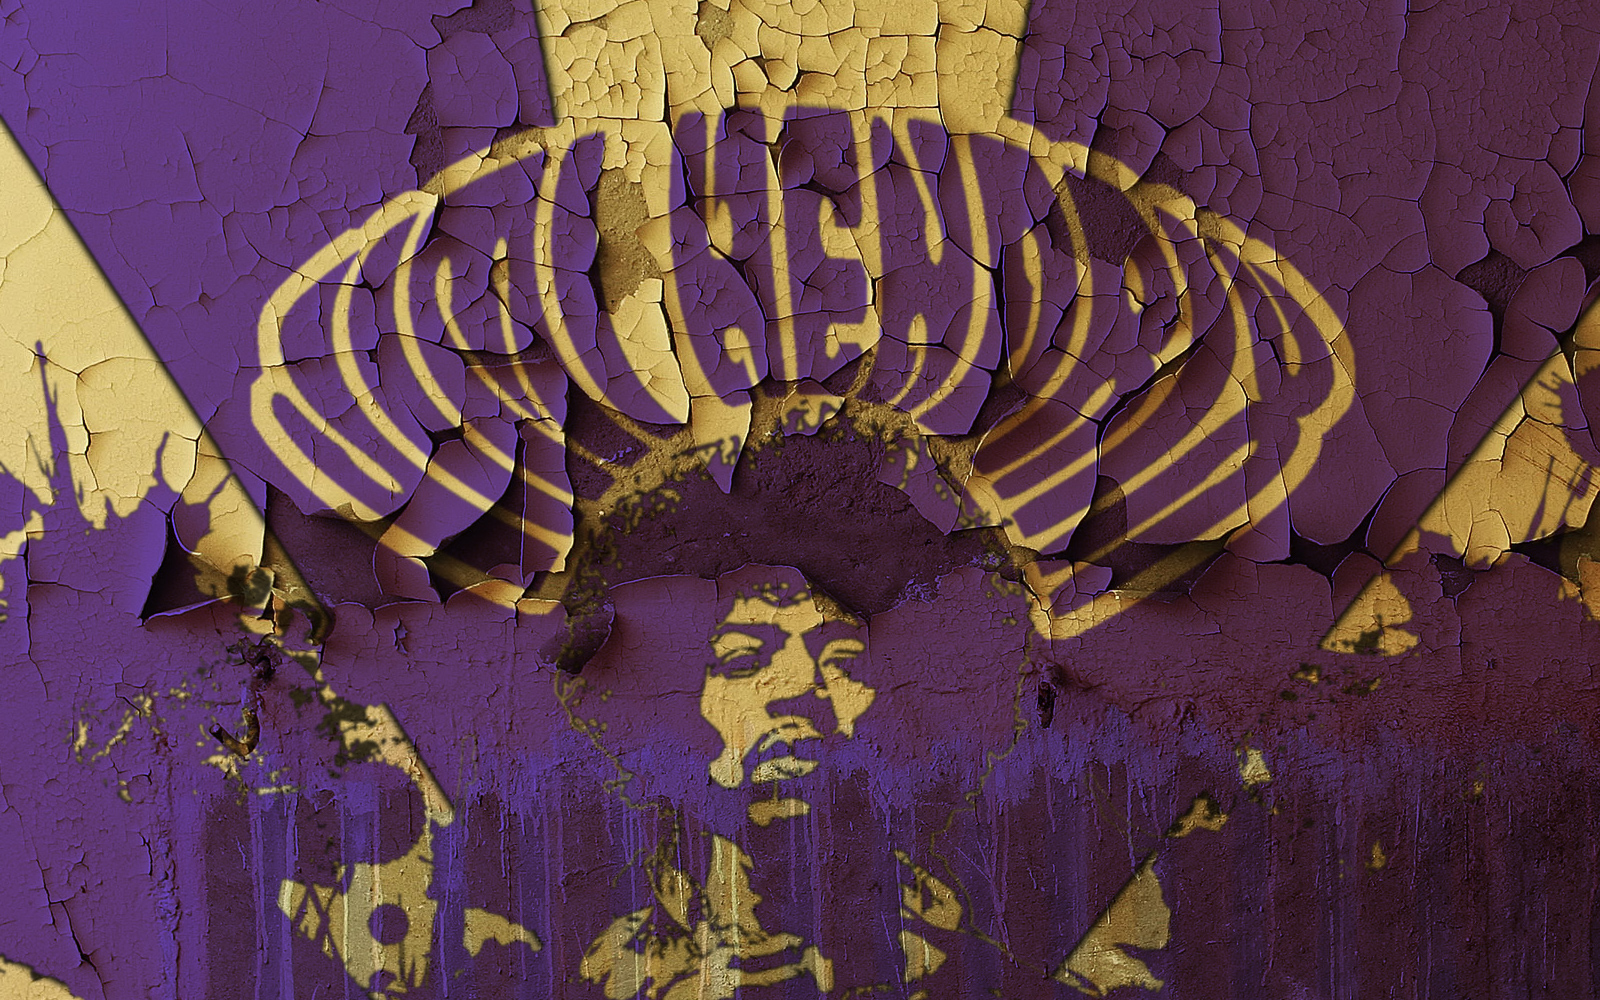 Jimi Hendrix Wallpaper High Resolution Xjszpnm 4usky